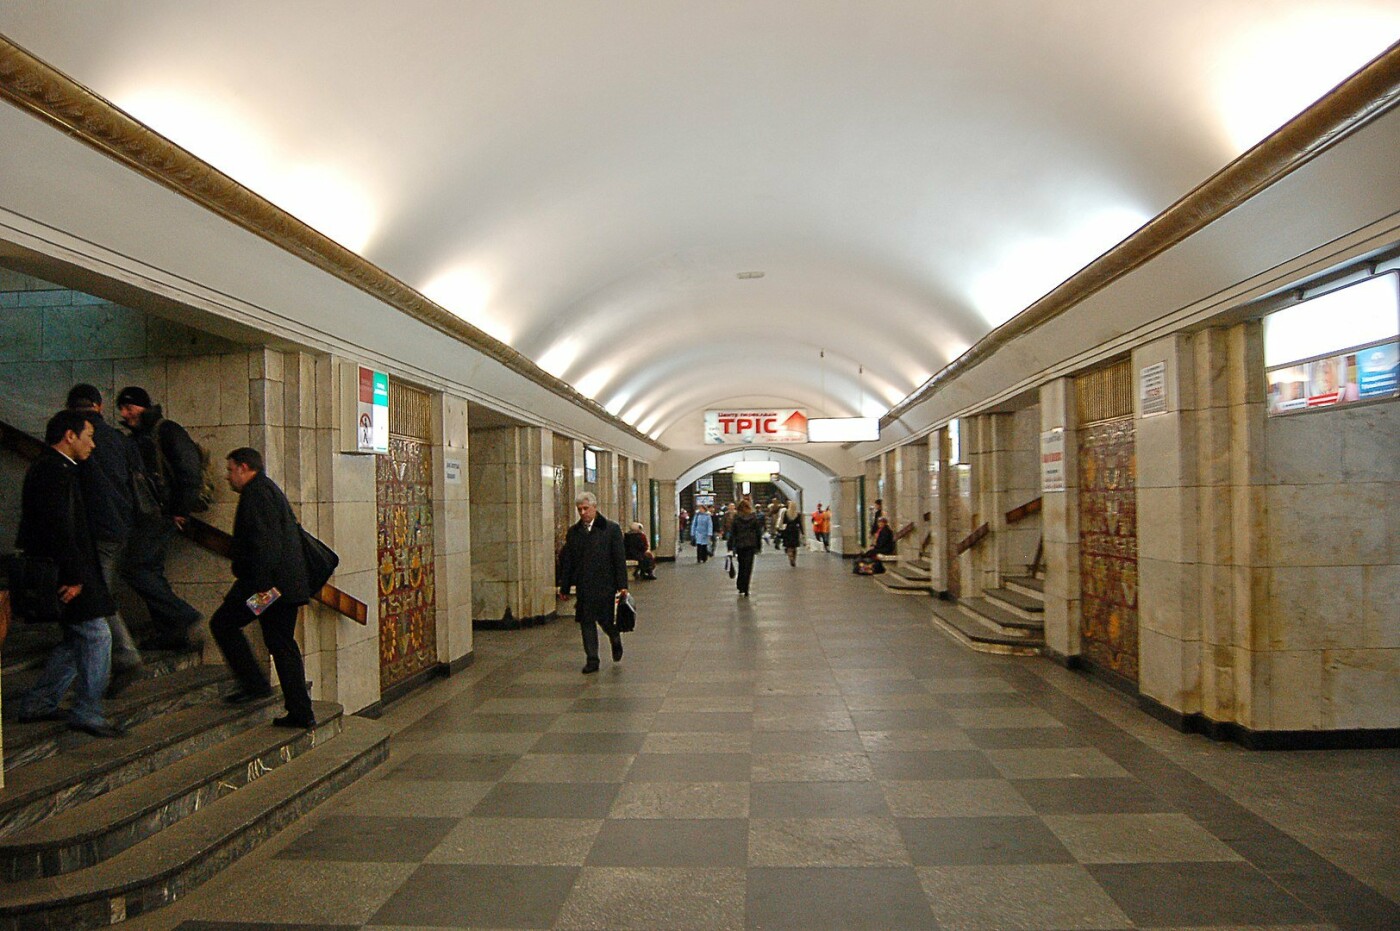 Как приезжему ориентироваться в транспорте Киева и экономить на поездках, Фото: Википедия